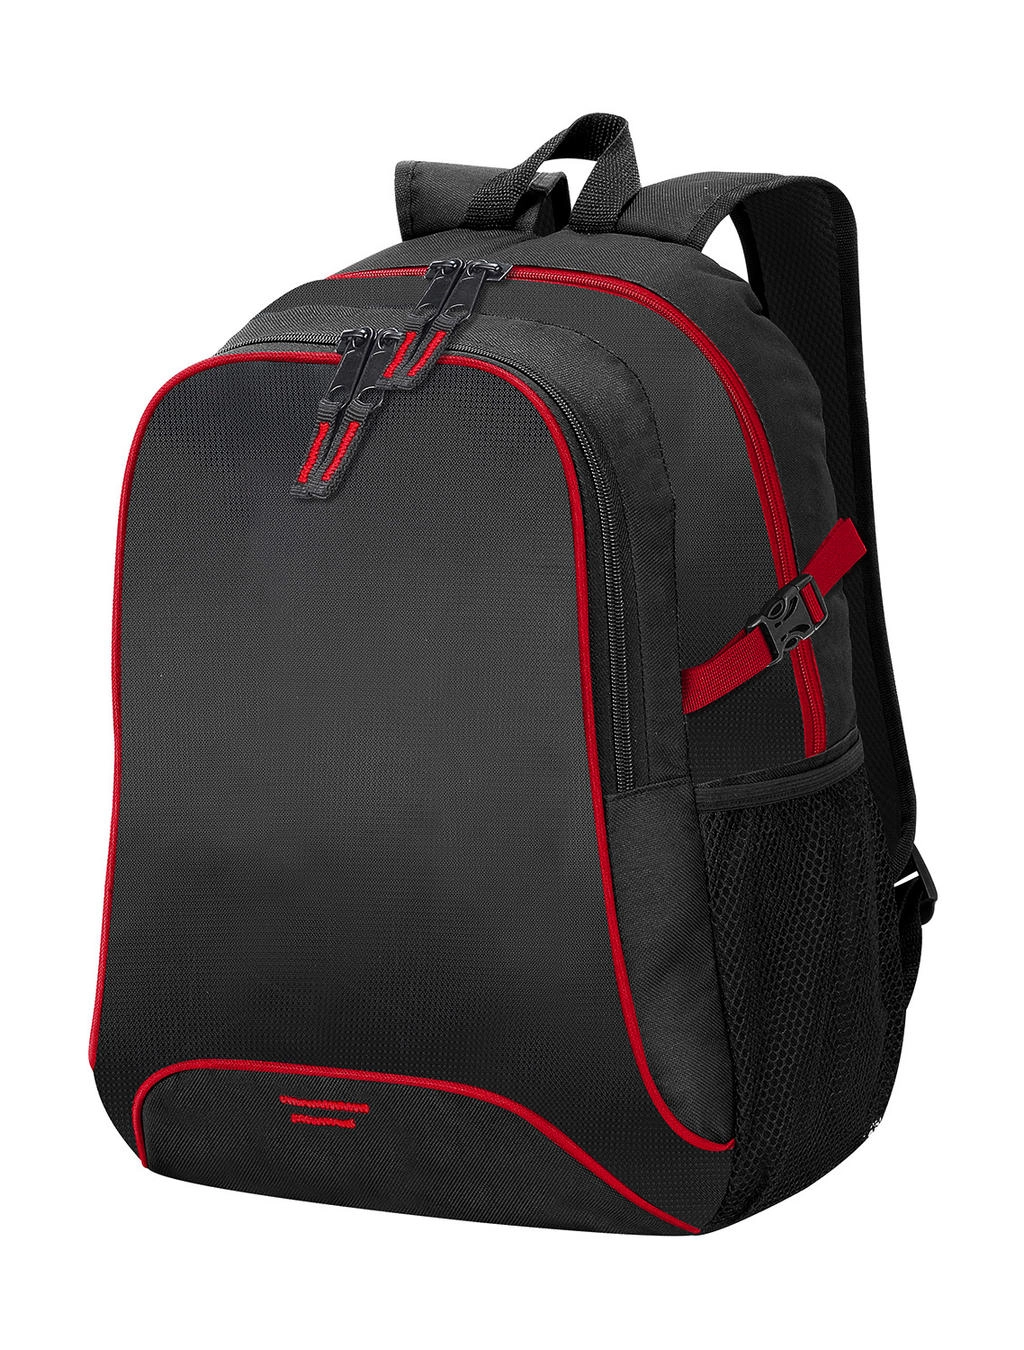 Osaka Basic Backpack zum Besticken und Bedrucken in der Farbe Black/Red mit Ihren Logo, Schriftzug oder Motiv.